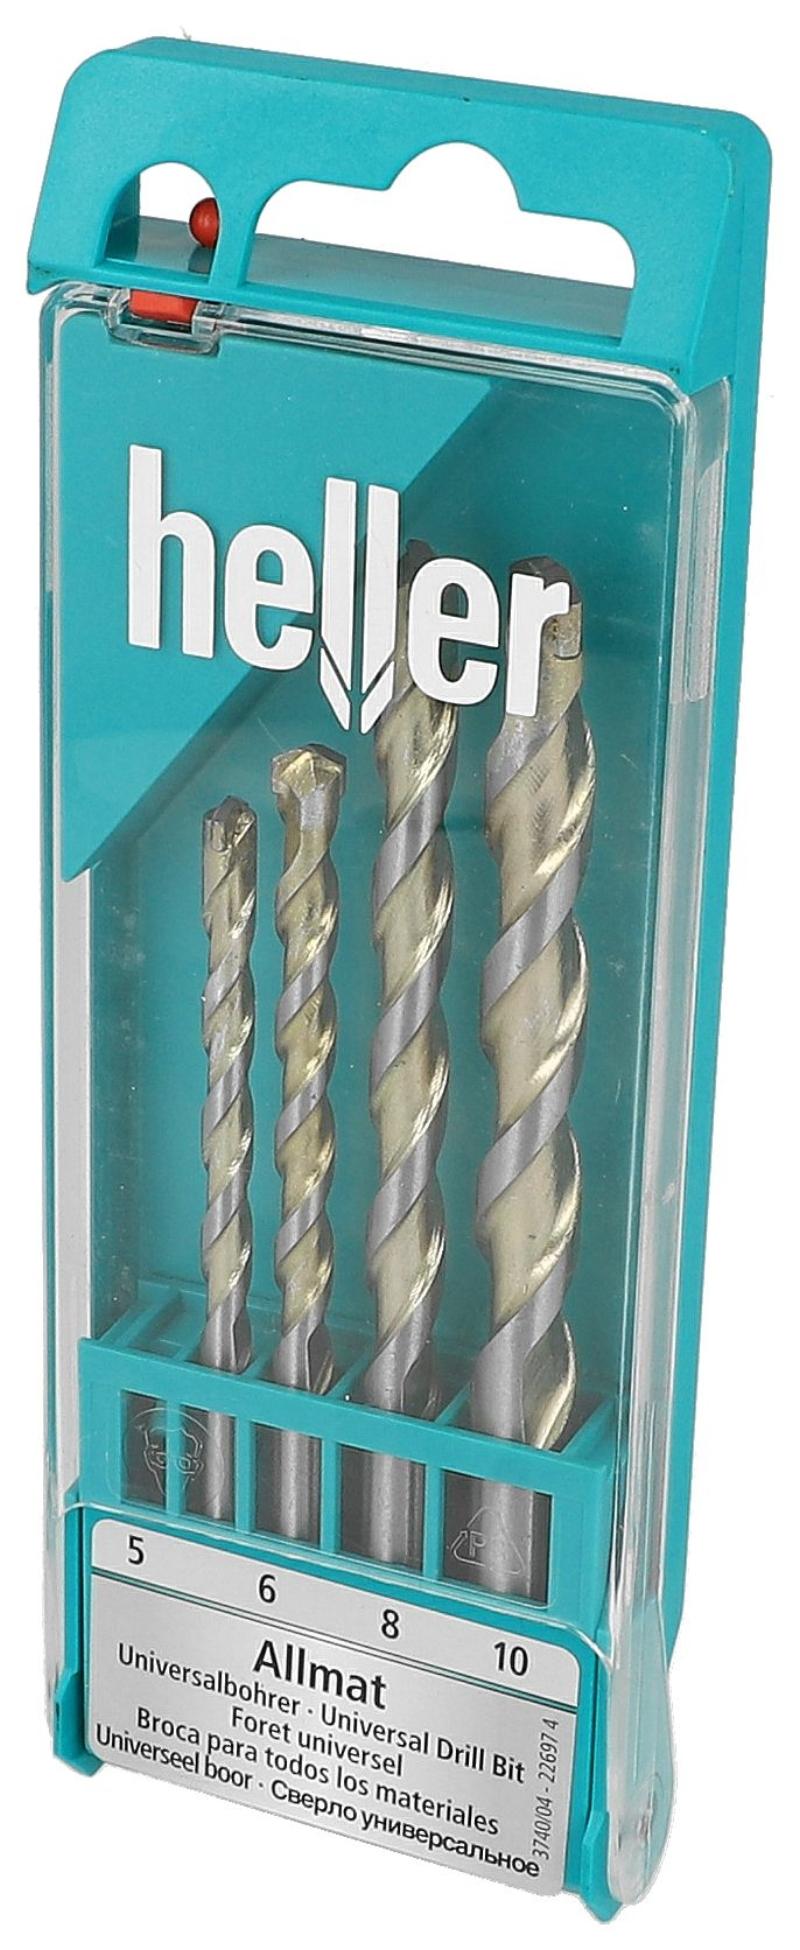 Heller unibor sladdlös 4 st, 5,6,8,10mm set